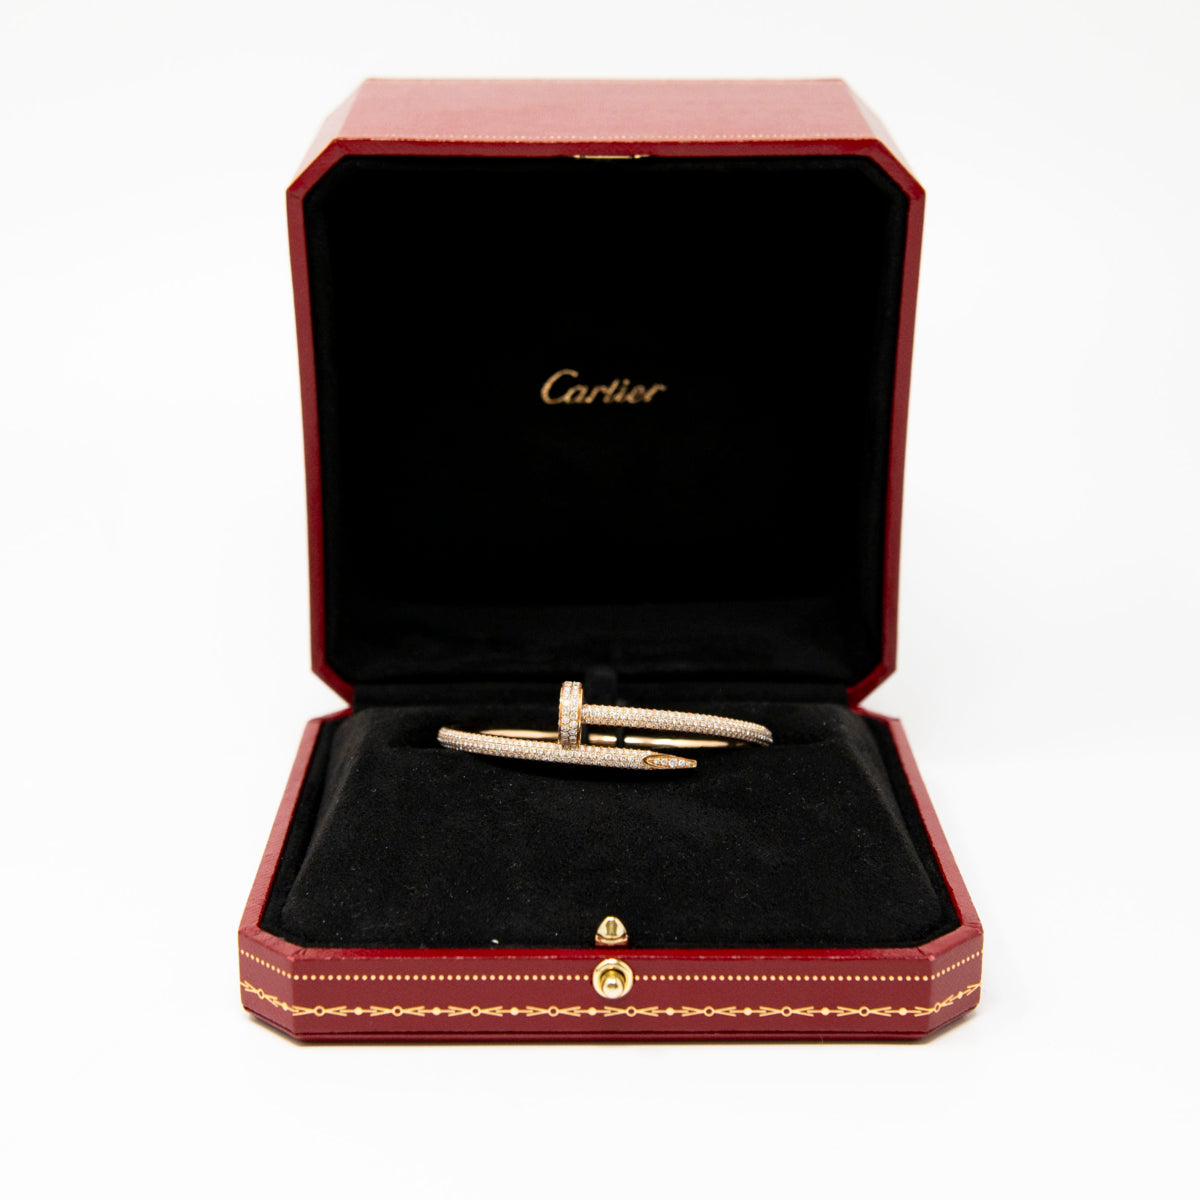 Cartier 18k Rose Gold Diamond Pave Juste Un Clou 16